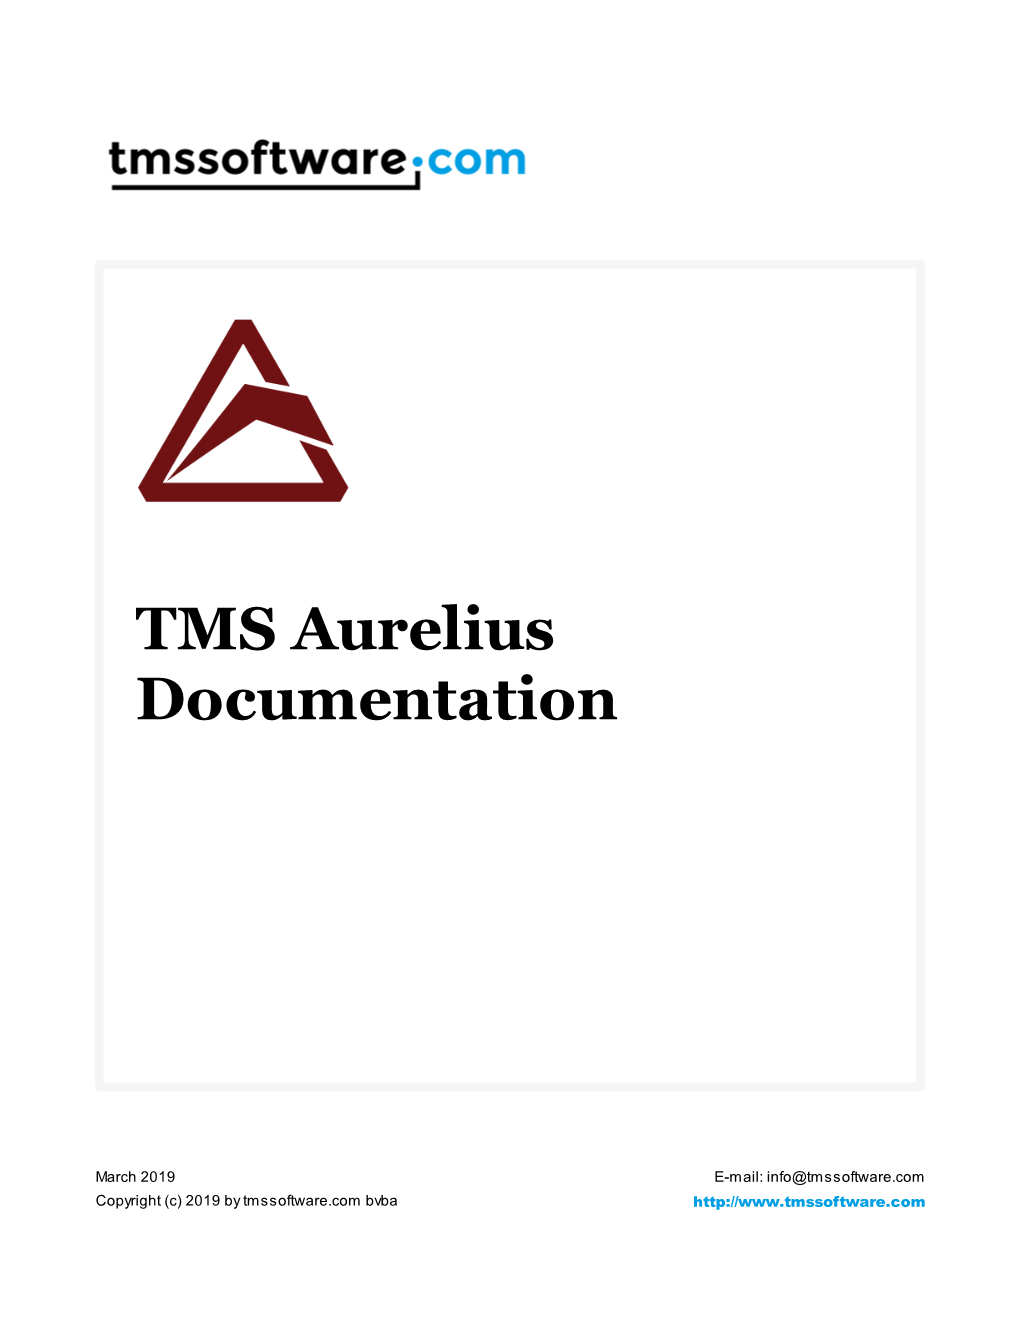 TMS Aurelius Documentation